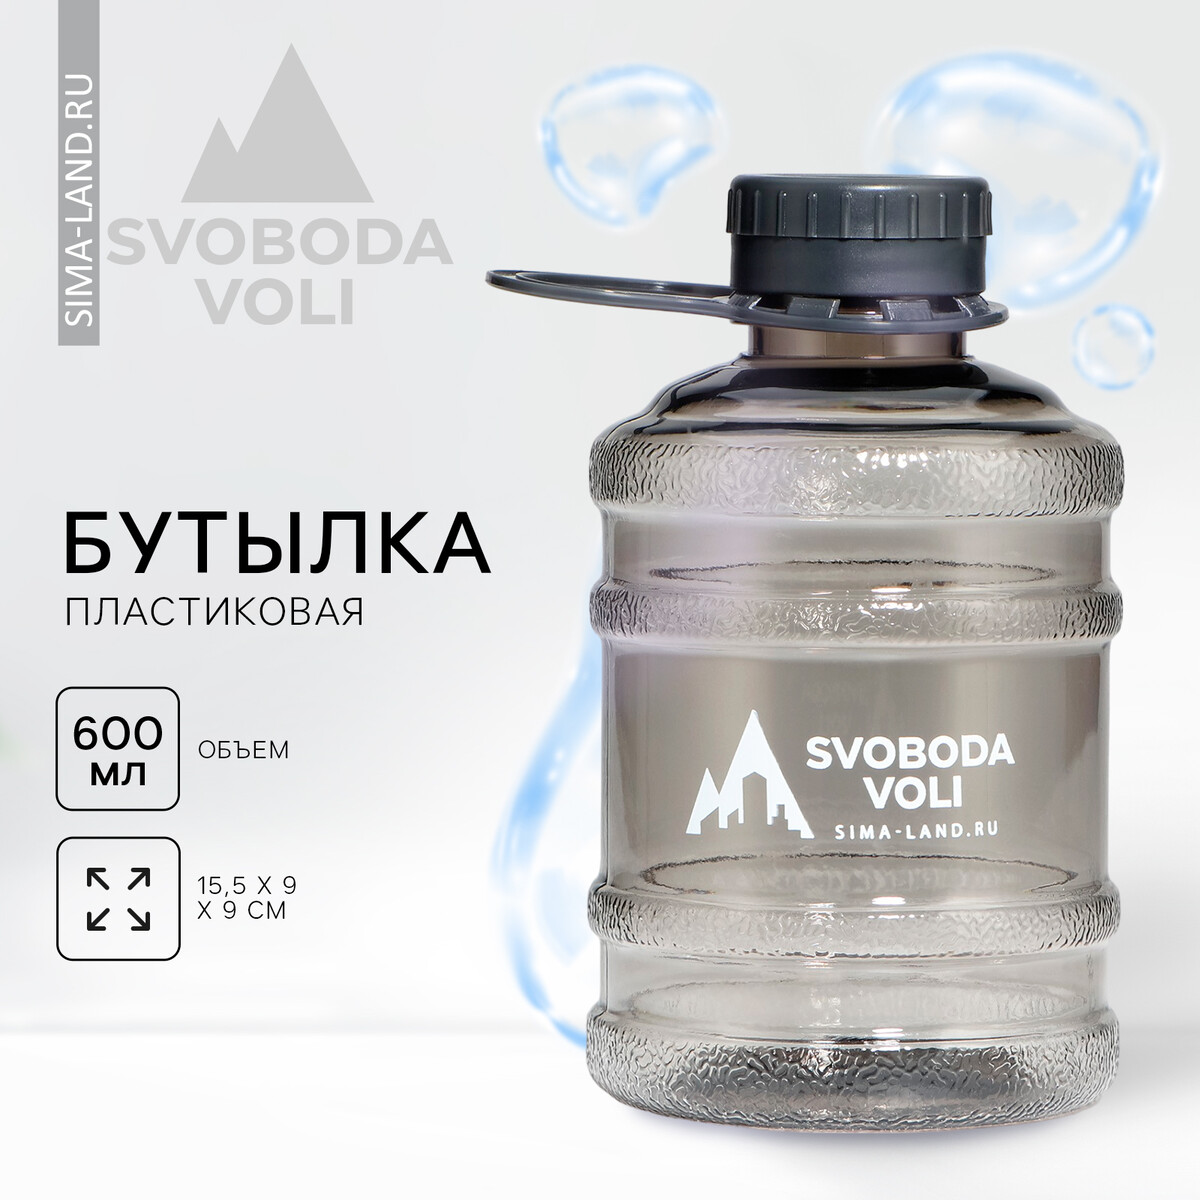 Бутылка для воды svoboda voli, 600 мл, цвет черный SVOBODA VOLI